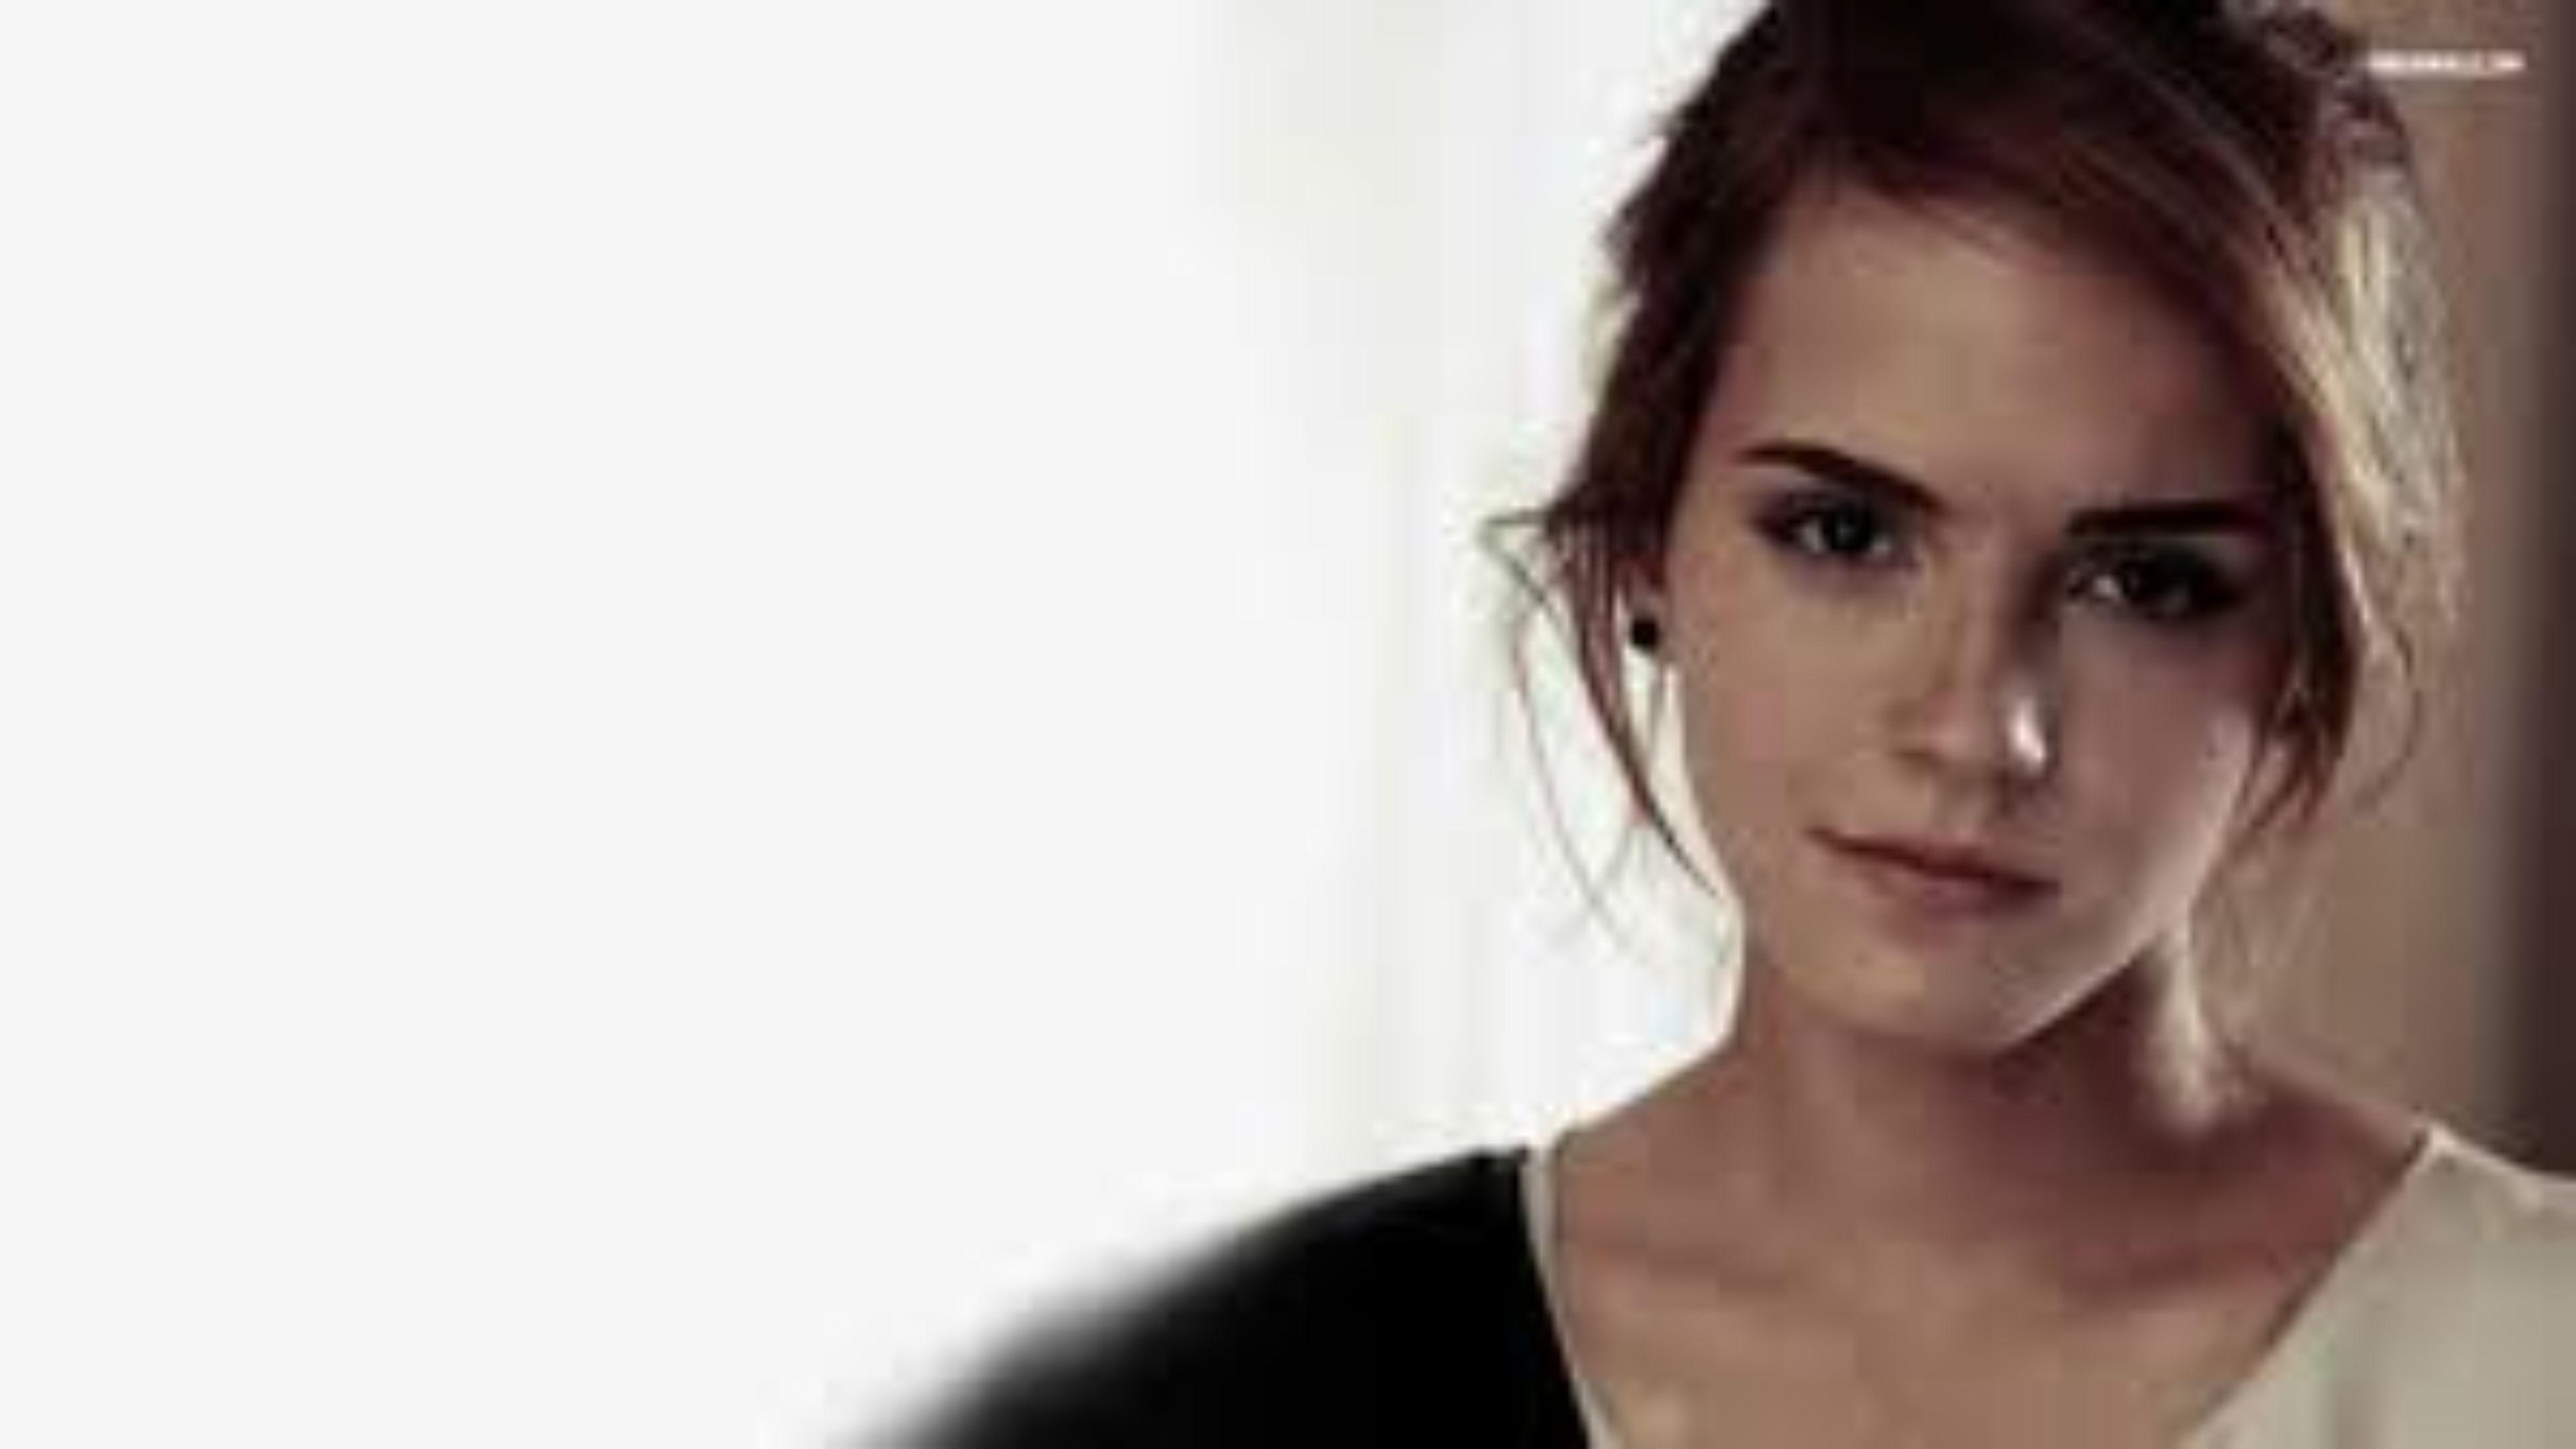 Beautiful Emma Watson 4K Wallpaper. Free 4K Wallpaper